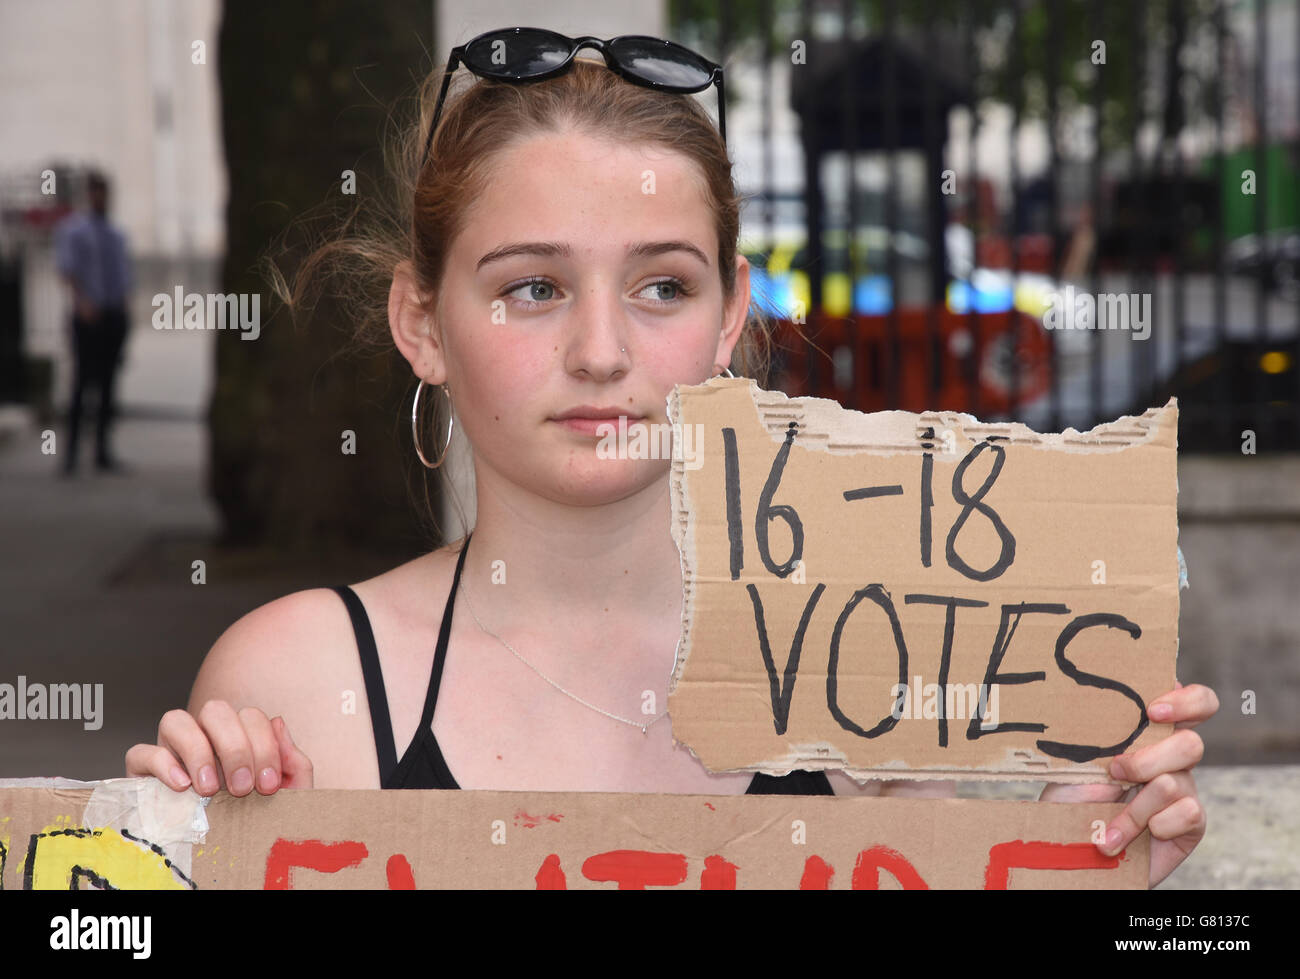 Les adolescents protestent contre le Brexit et le droit des 16-17 ans d'avoir un vote. En face du numéro 10 Downing Street, Whitehall, Londres. ROYAUME-UNI Banque D'Images